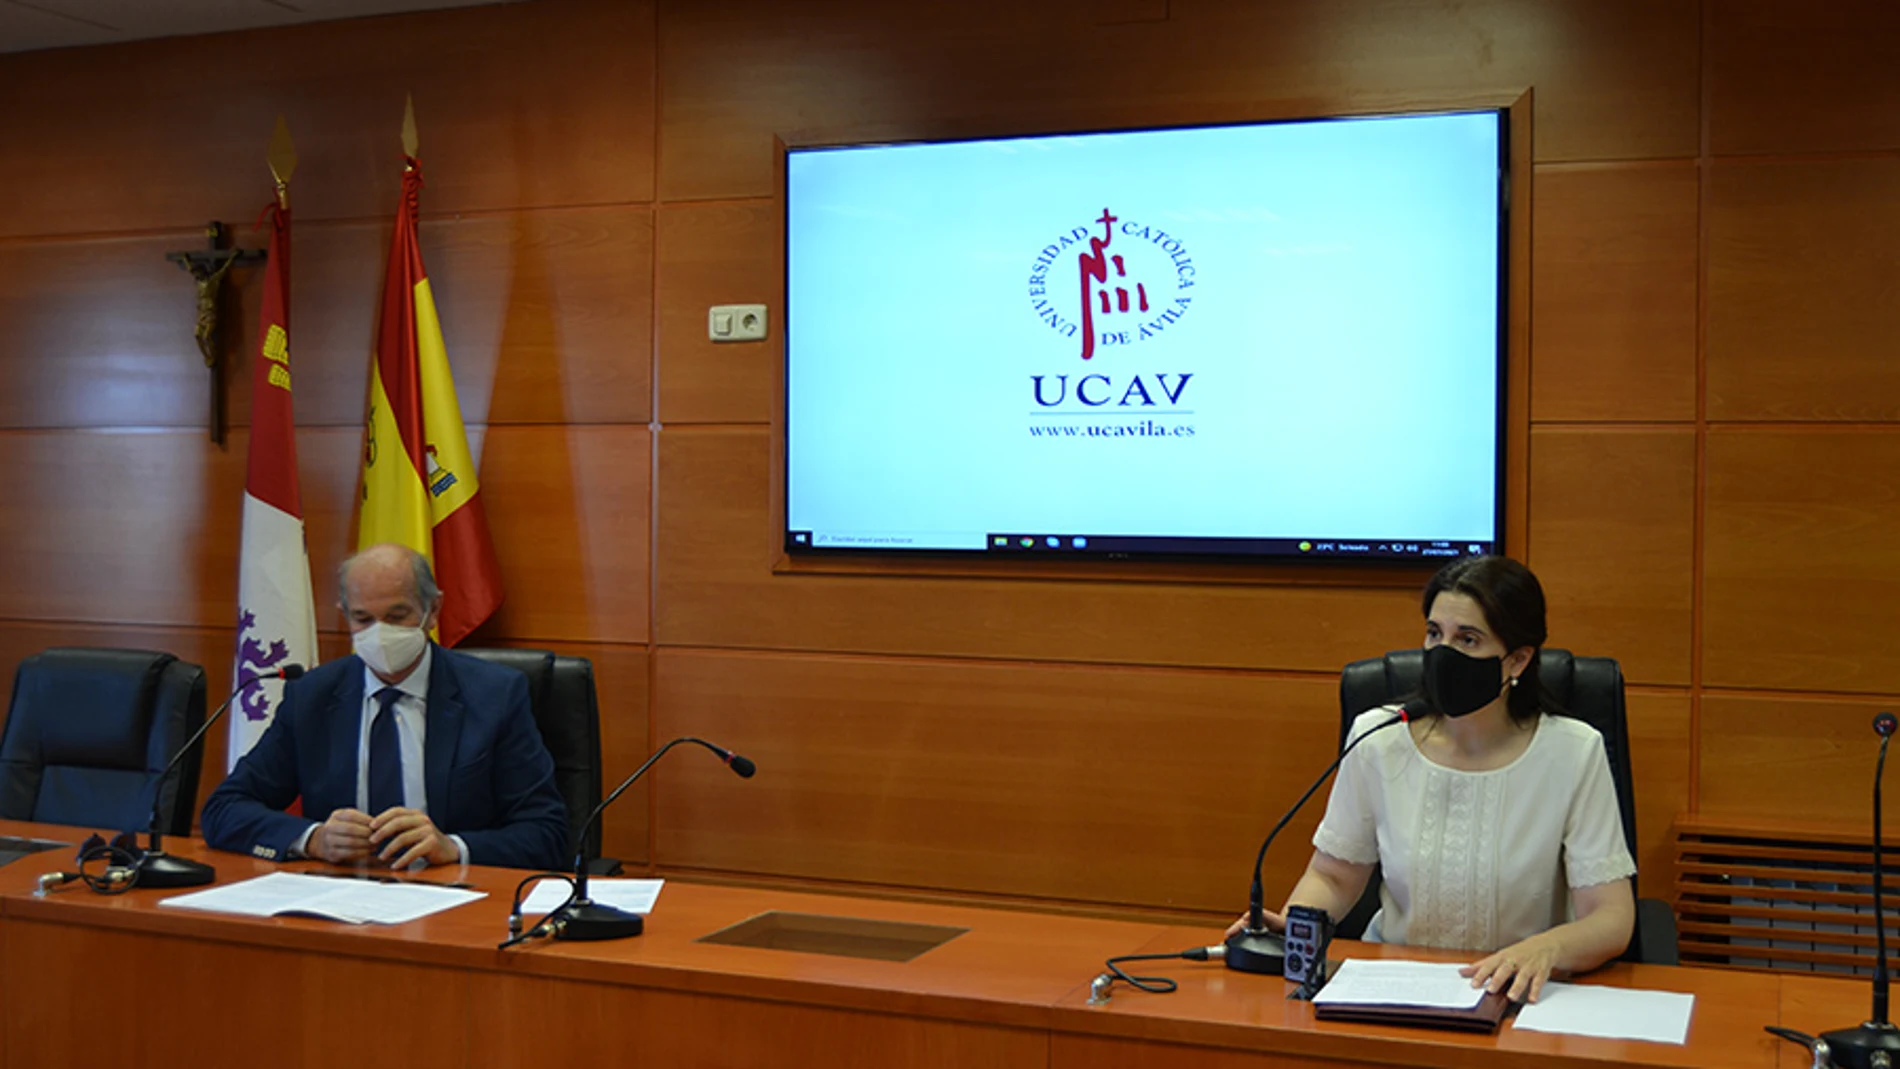 Lourdes Miguel y Javier Hernández durante la presentación del máster de la UCAV